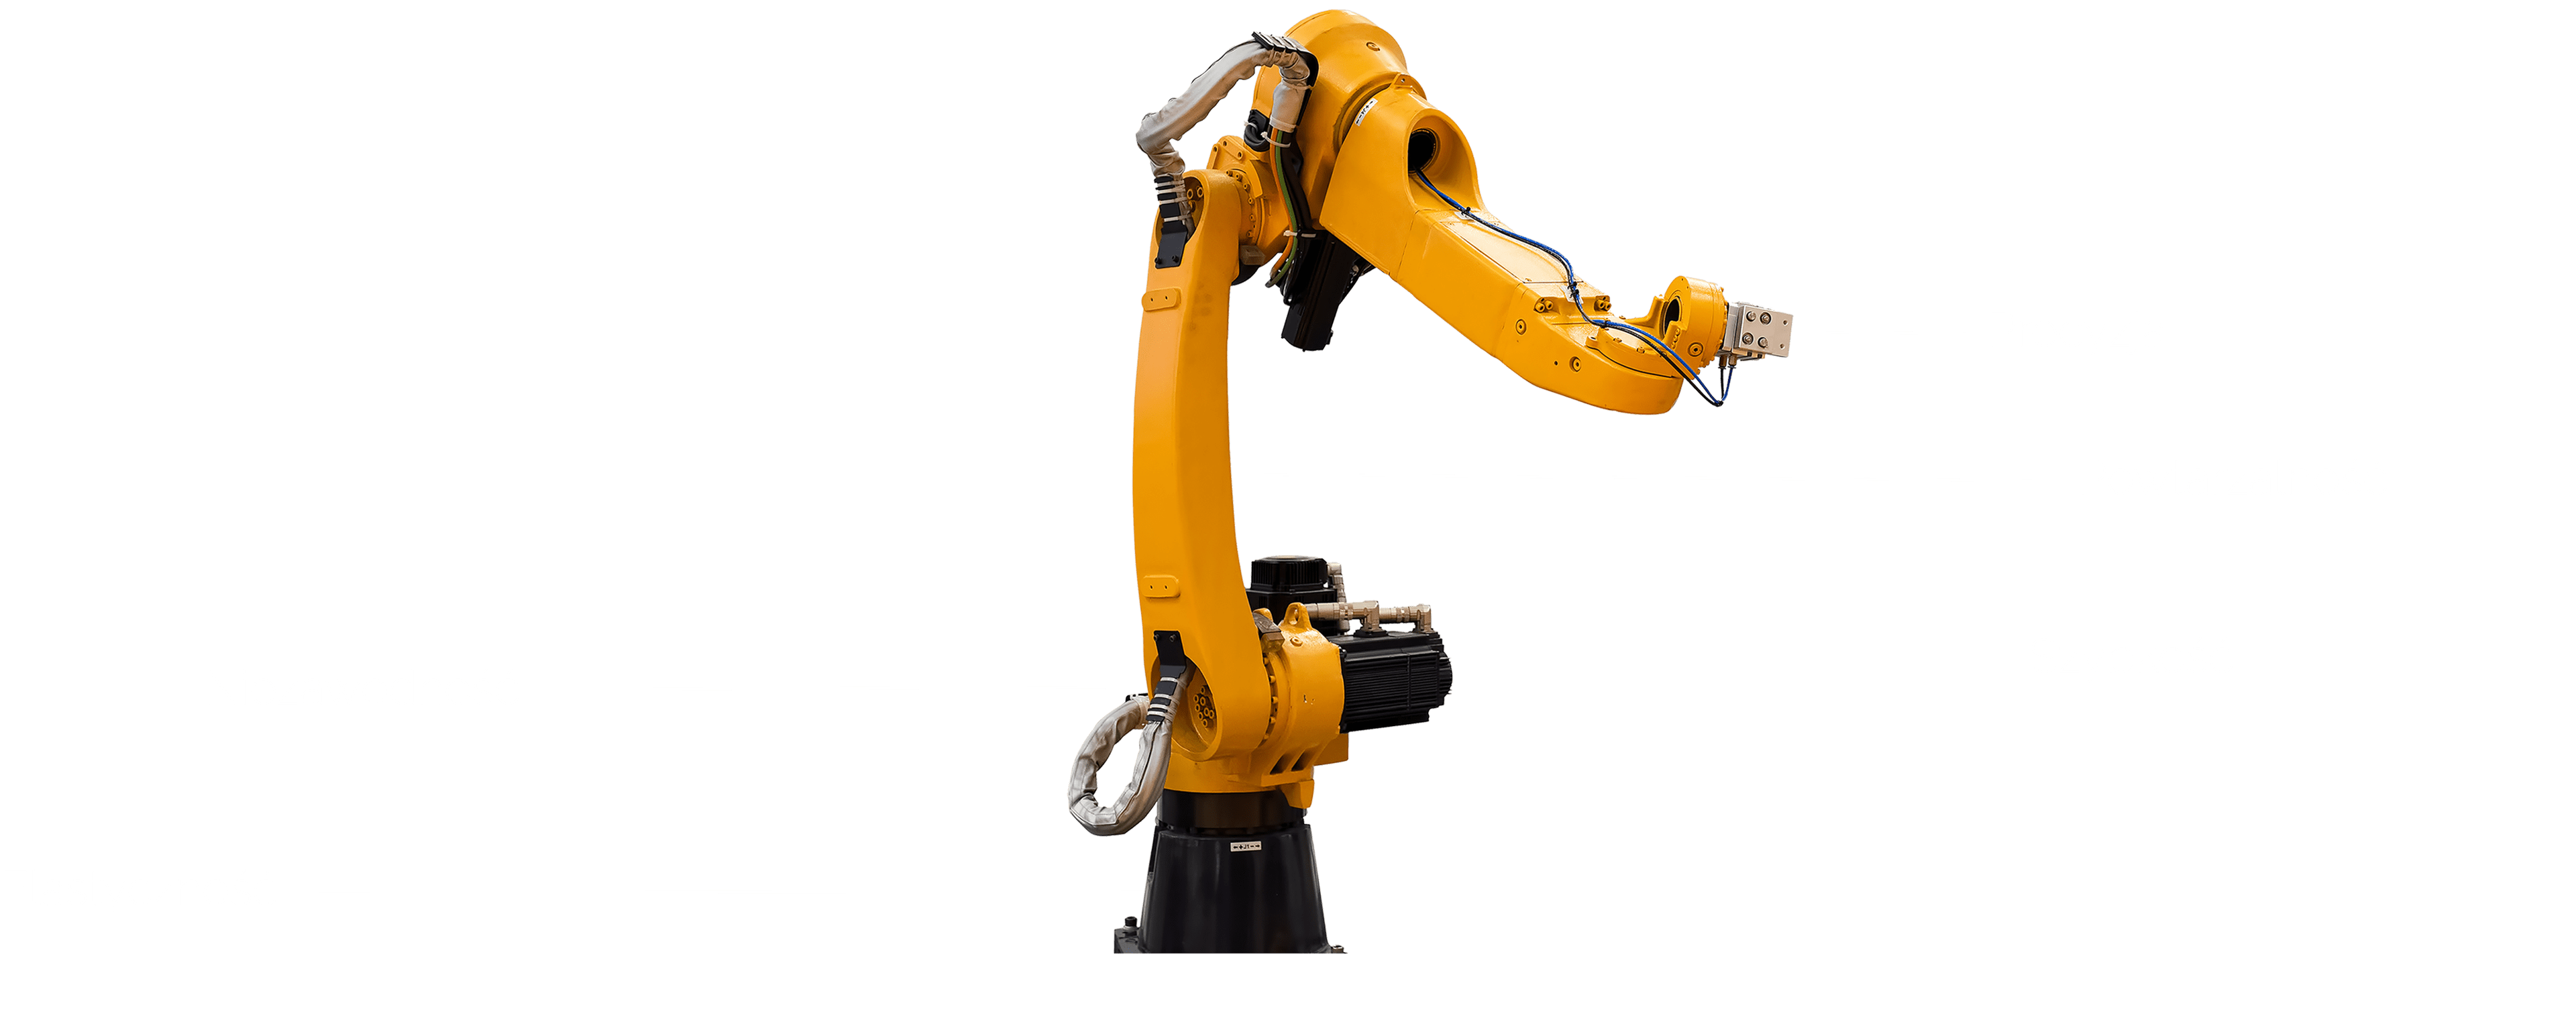 Robotyzacja procesów przemysłowych - Robot1